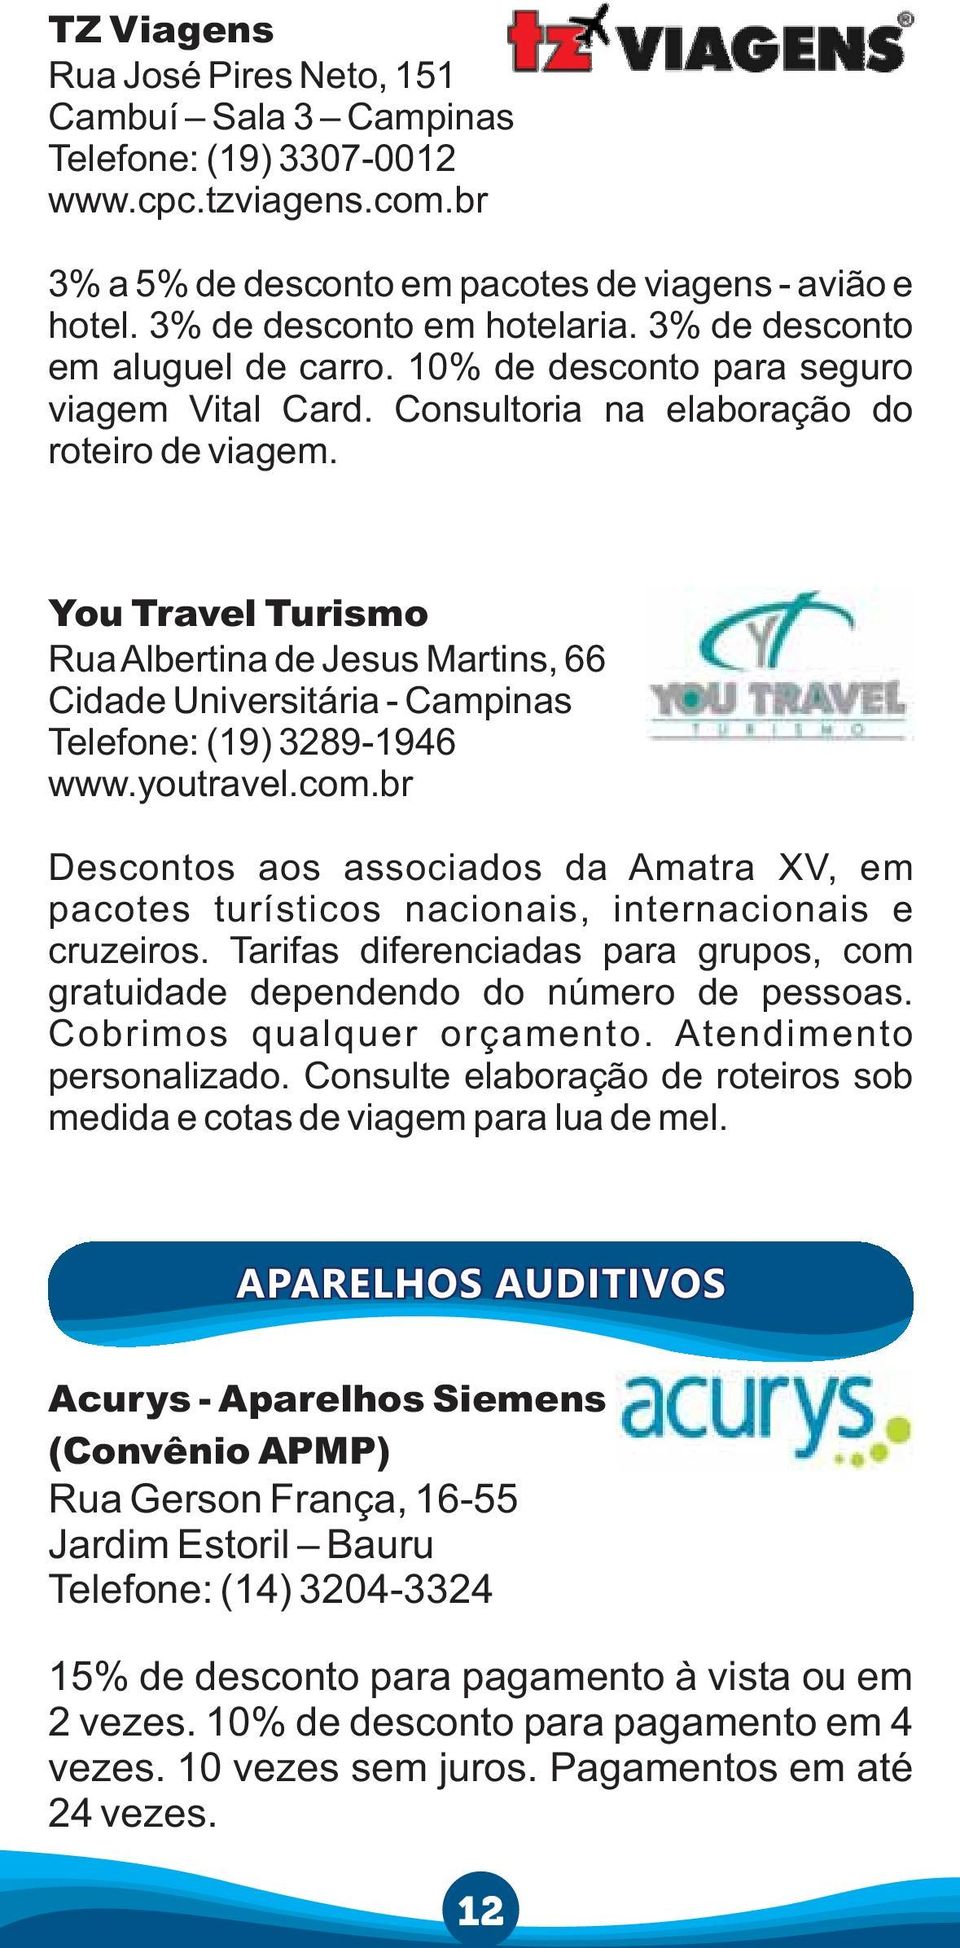 You Travel Turismo Rua Albertina de Jesus Martins, 66 Cidade Universitária - Campinas Telefone: (19) 3289-1946 www.youtravel.com.